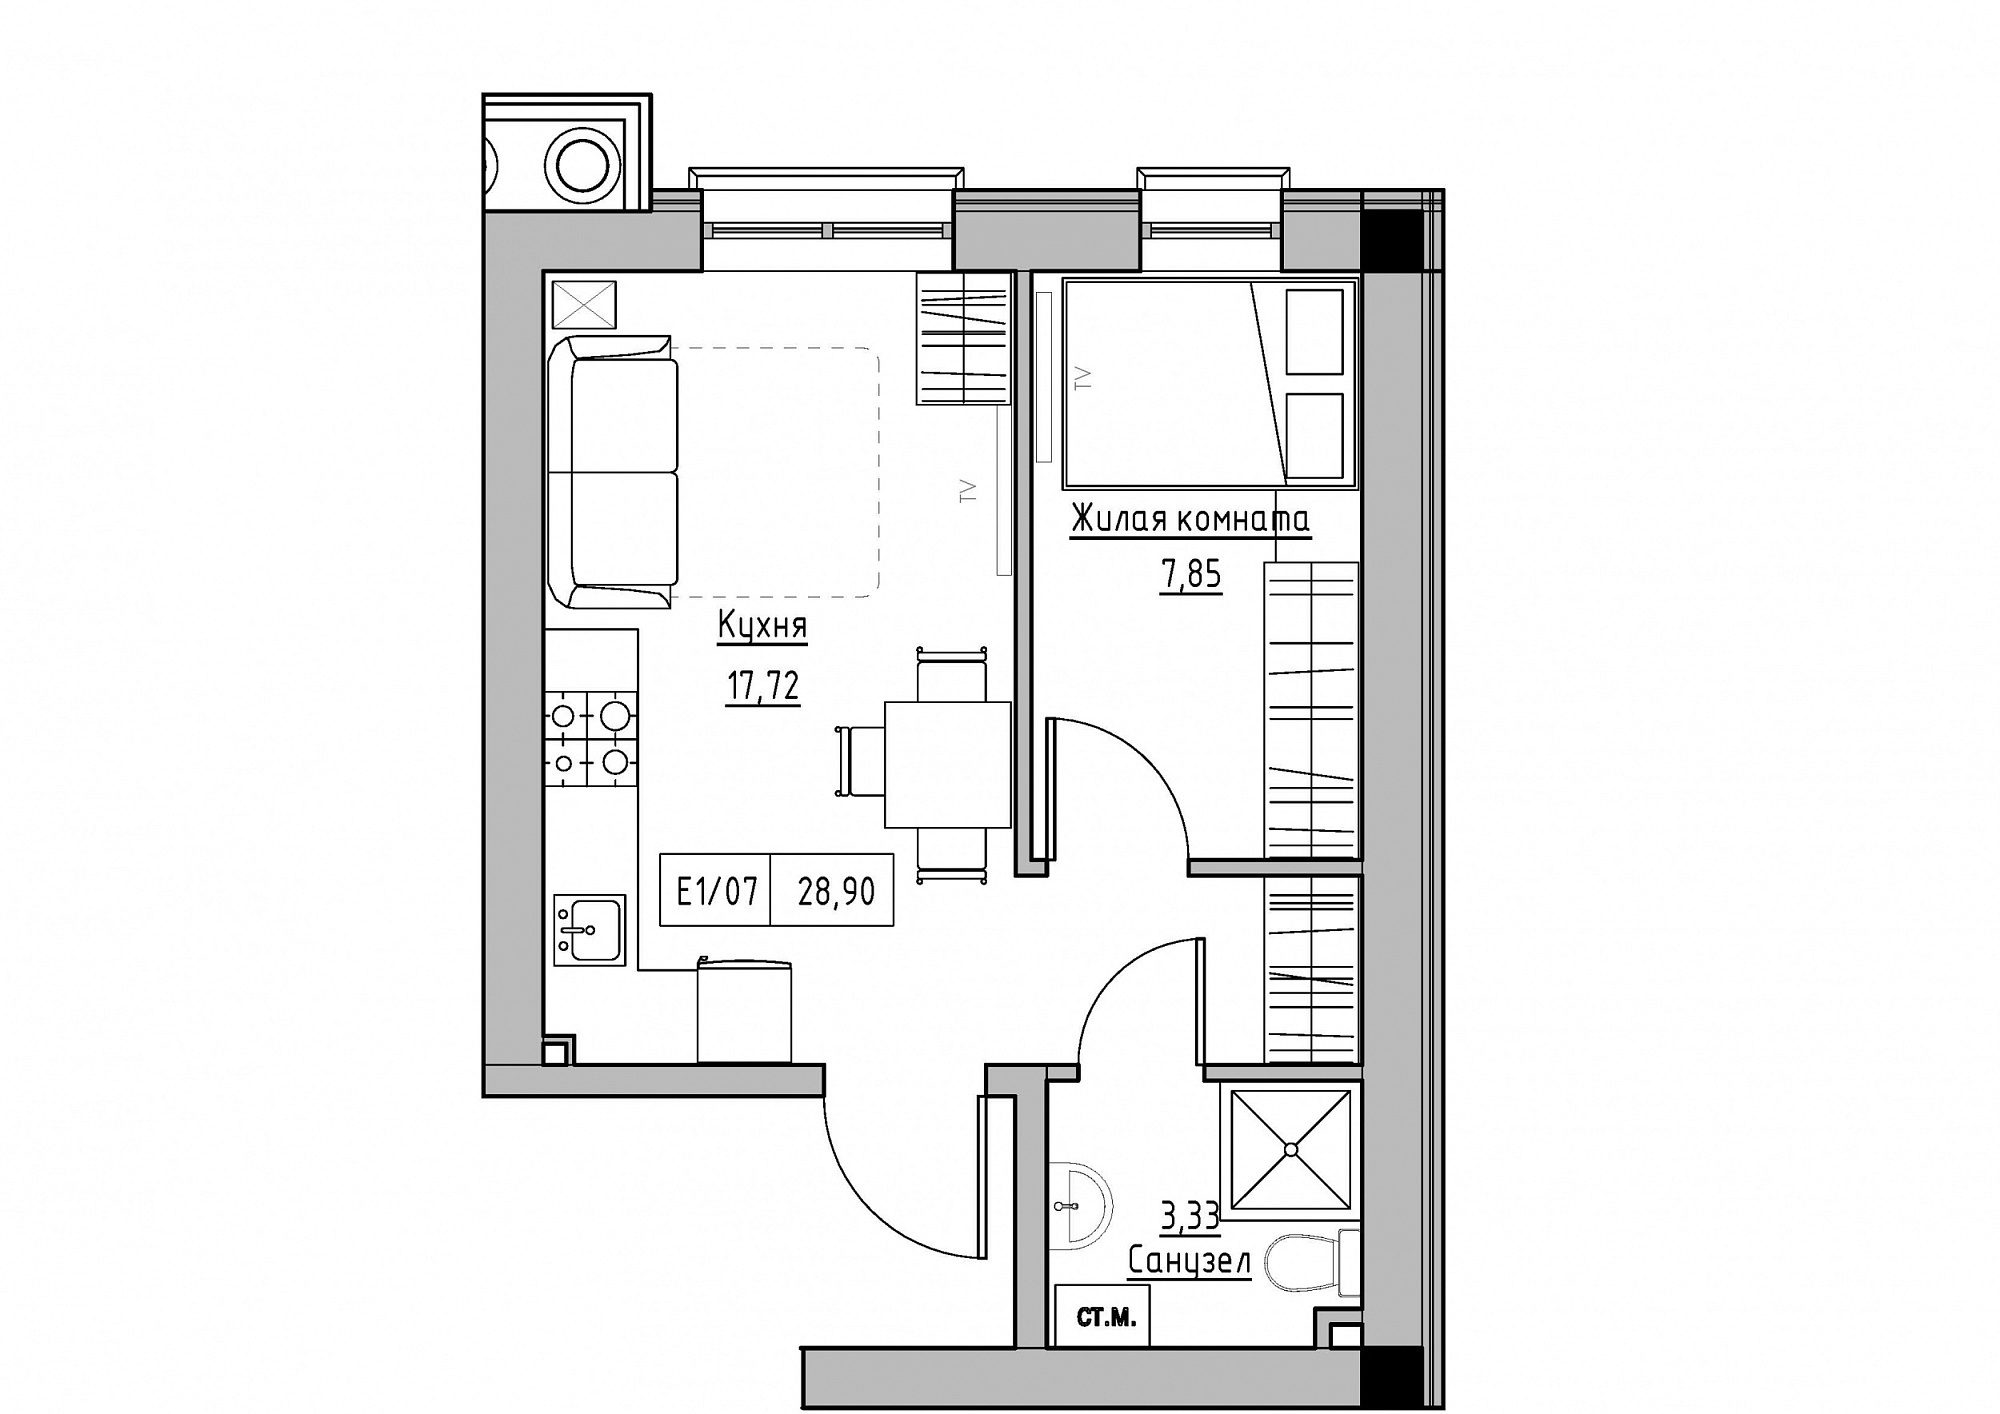 Планування 1-к квартира площею 28.9м2, KS-012-01/0002.